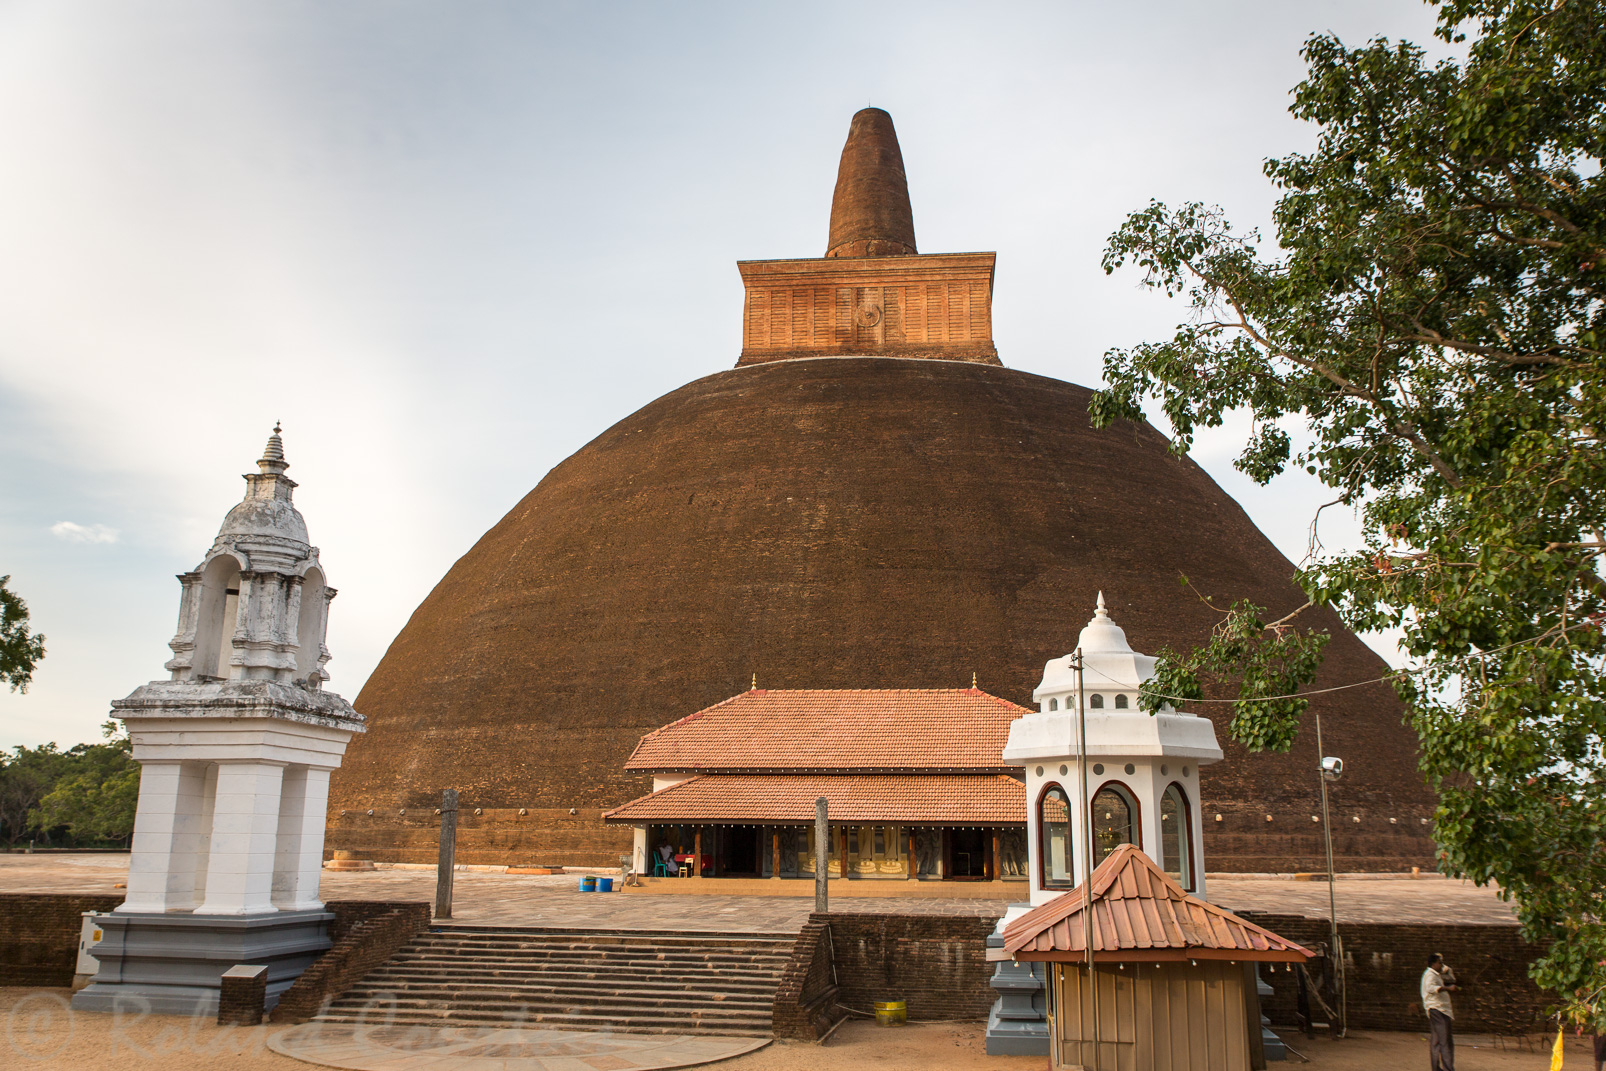 Abhayagiri Dagoba. La plus grande construction en briques après les pyramides de Gizeh. Le plus grand stupa du monde.